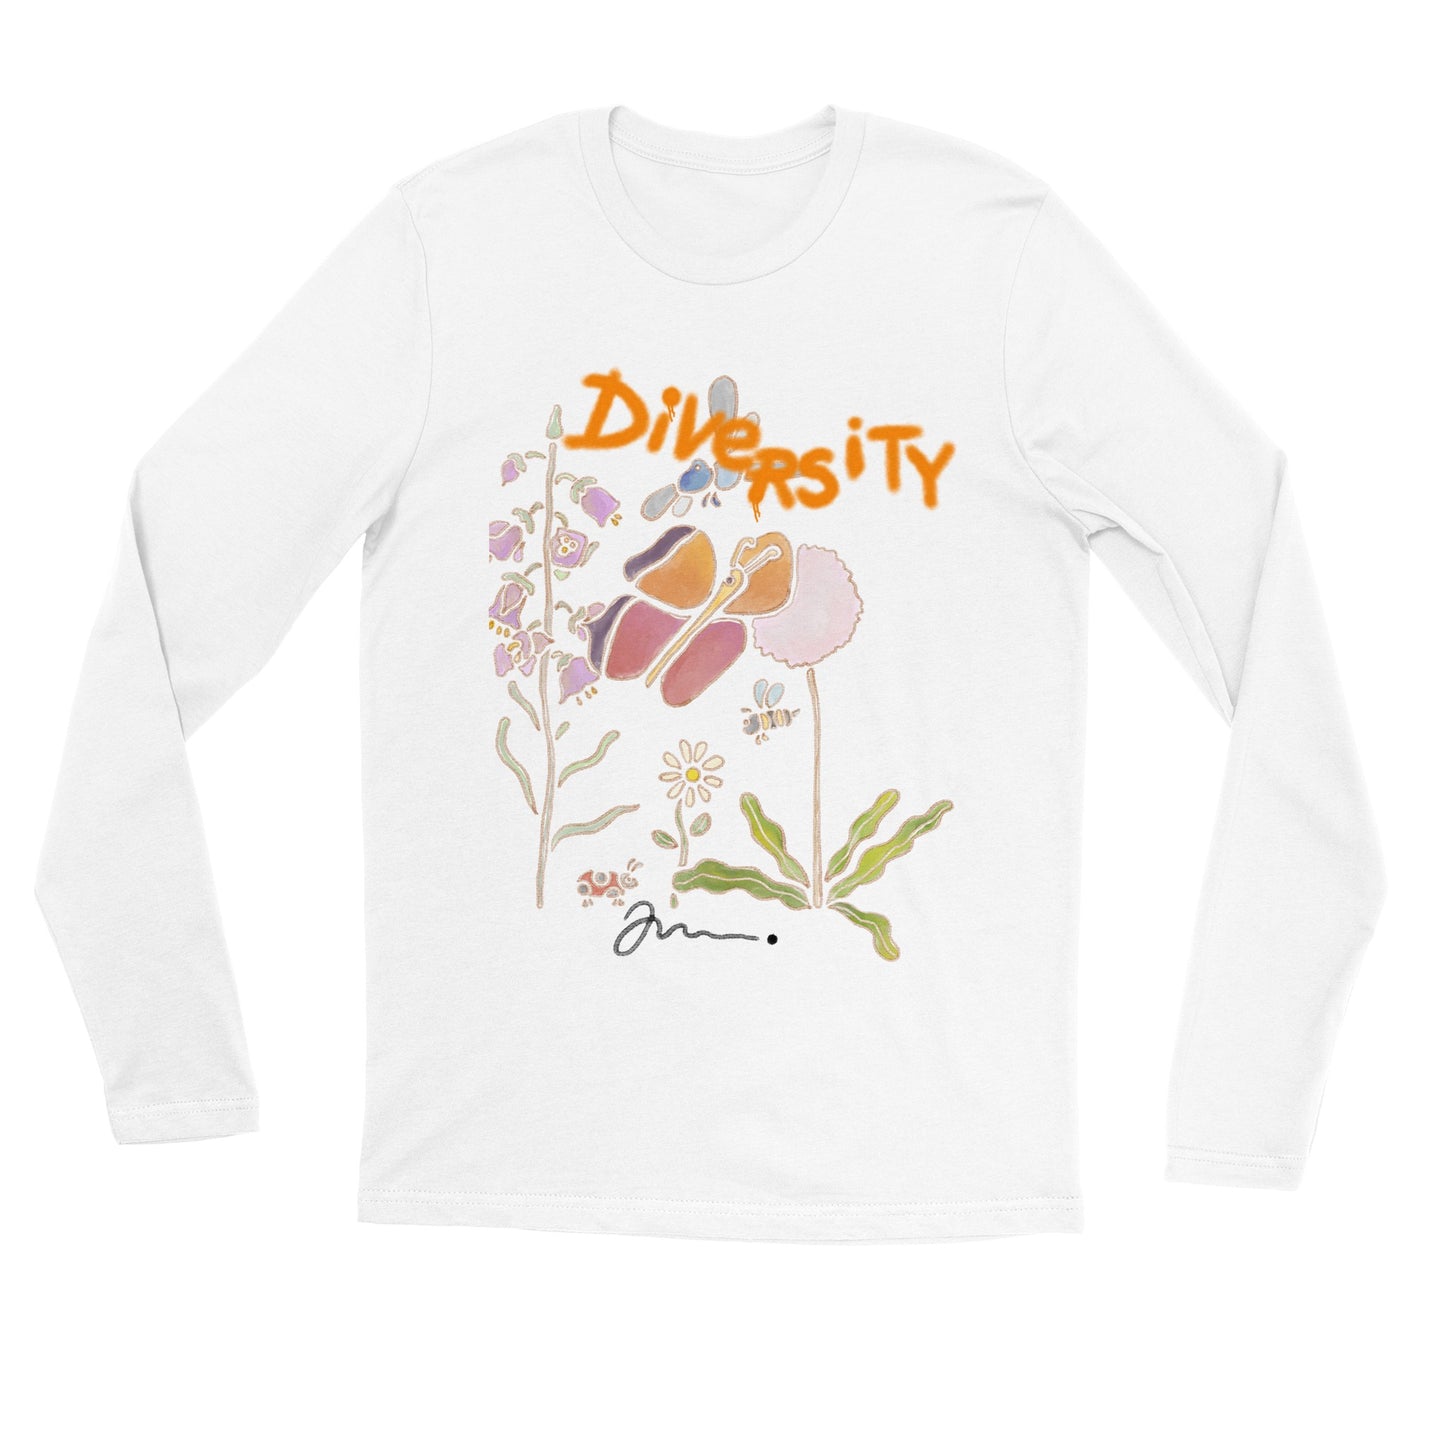 kropspositiv body positivity og miljøvenlig budskab t shirt